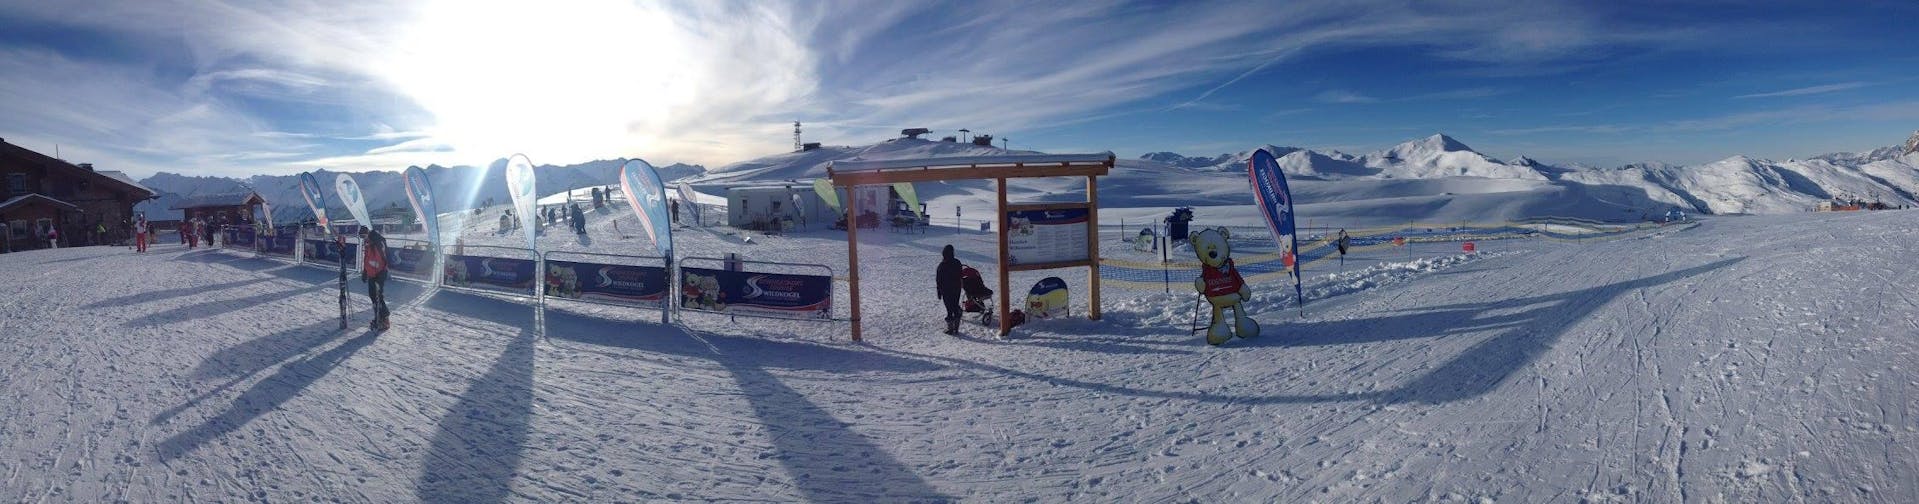 Landschap op de prachtige pistes tijdens de Kids Skilessen (3-14 j.) voor alle niveaus - Hele dag met Schneesportschule Wildkogel.